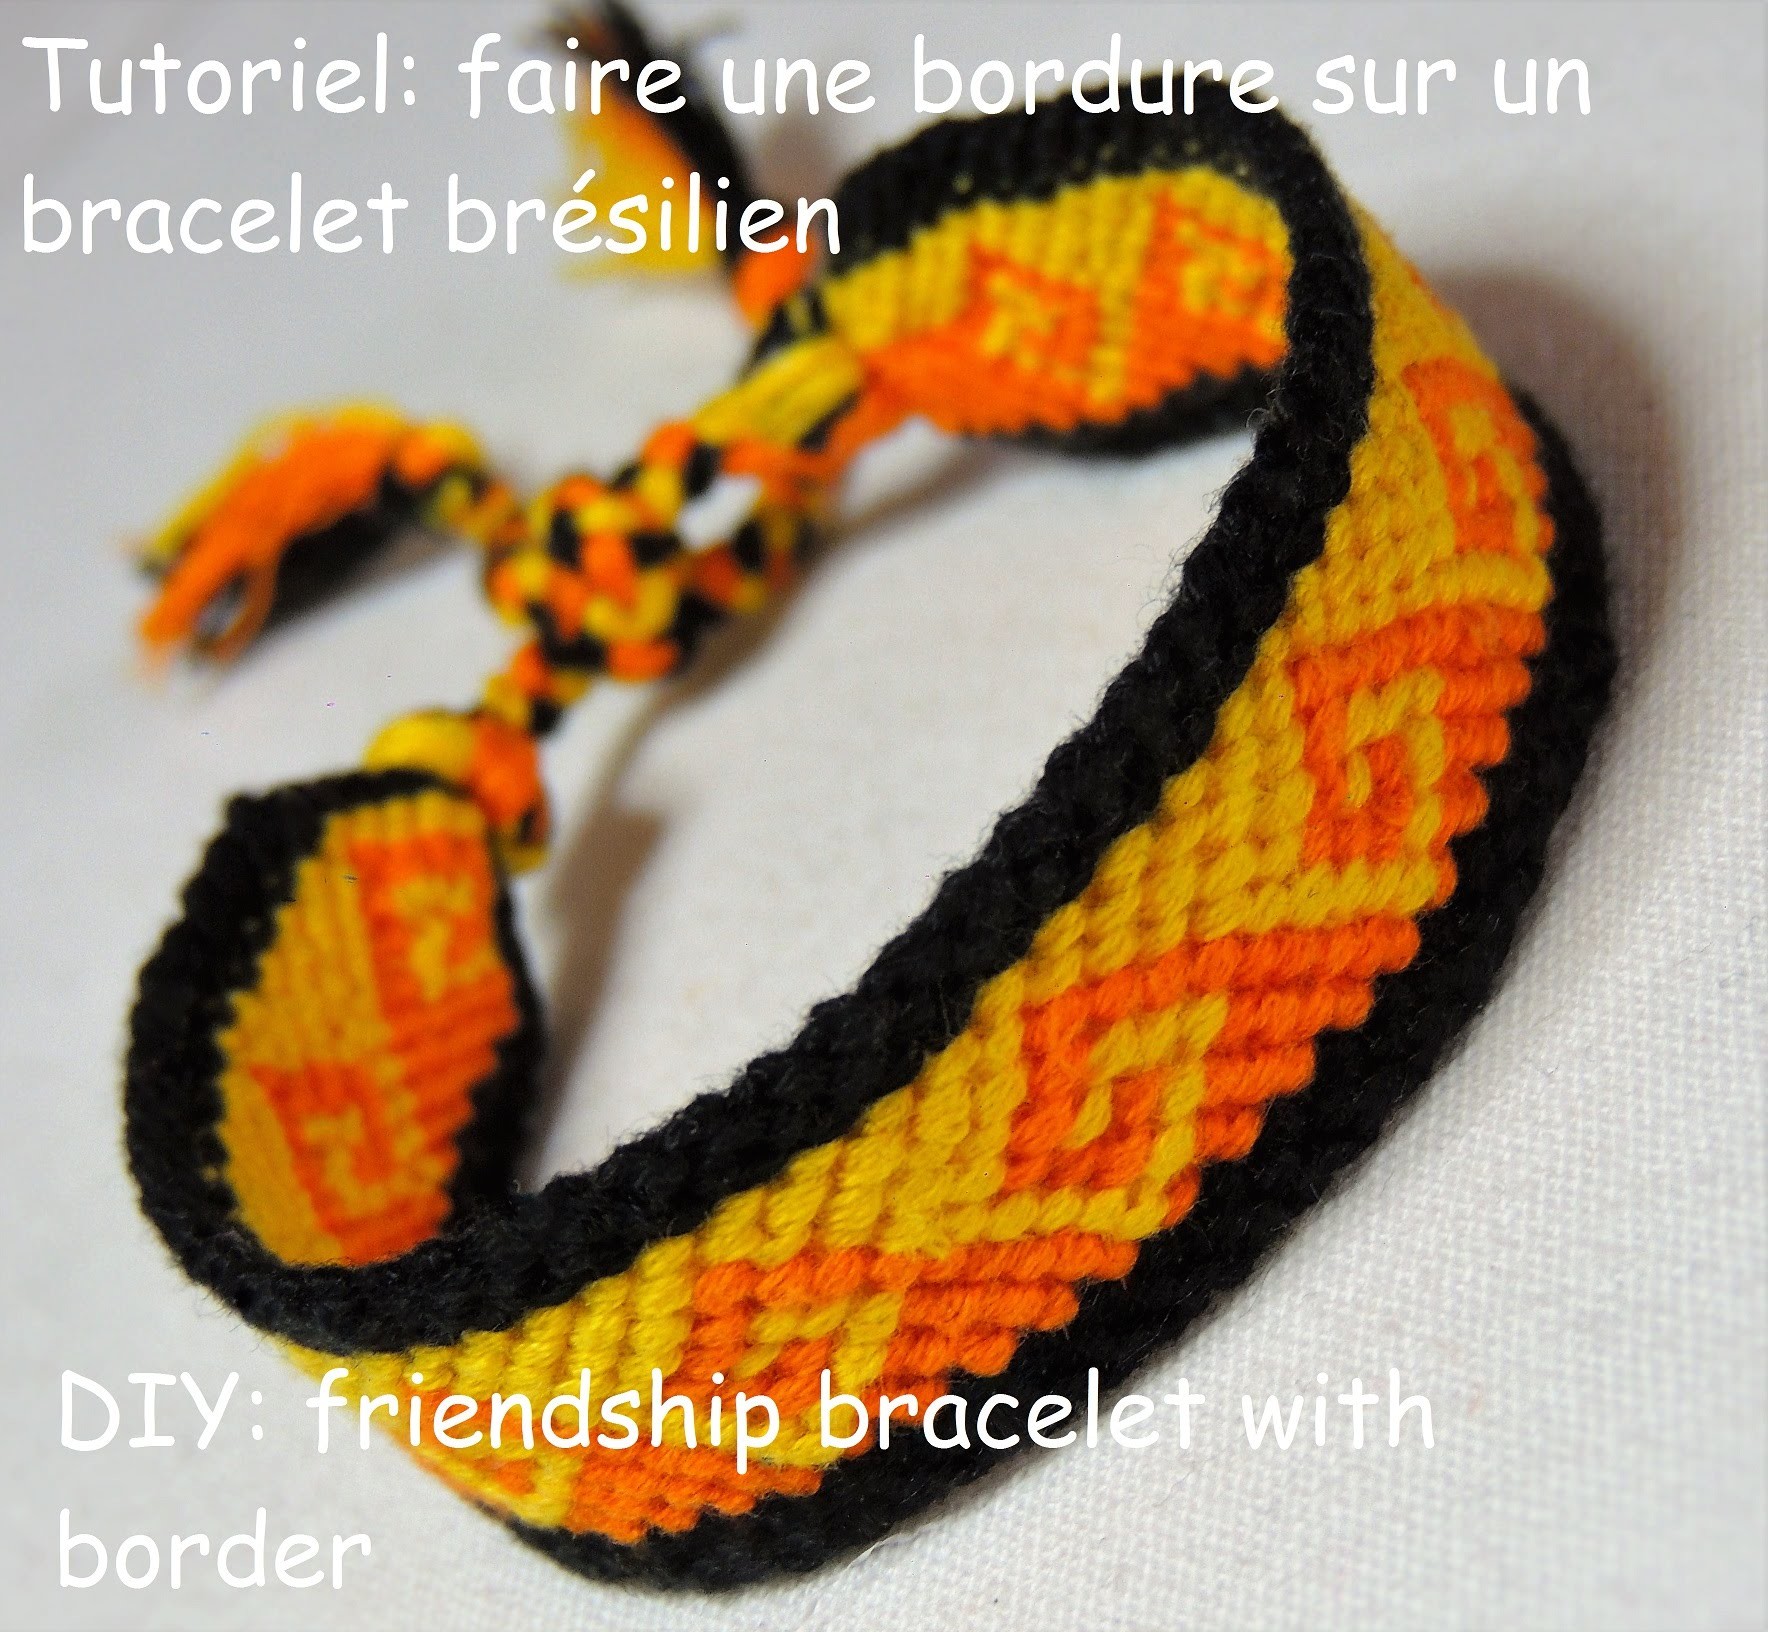 Faire une bordure sur un bracelet brésilien  (DIY friendship bracelet with border)